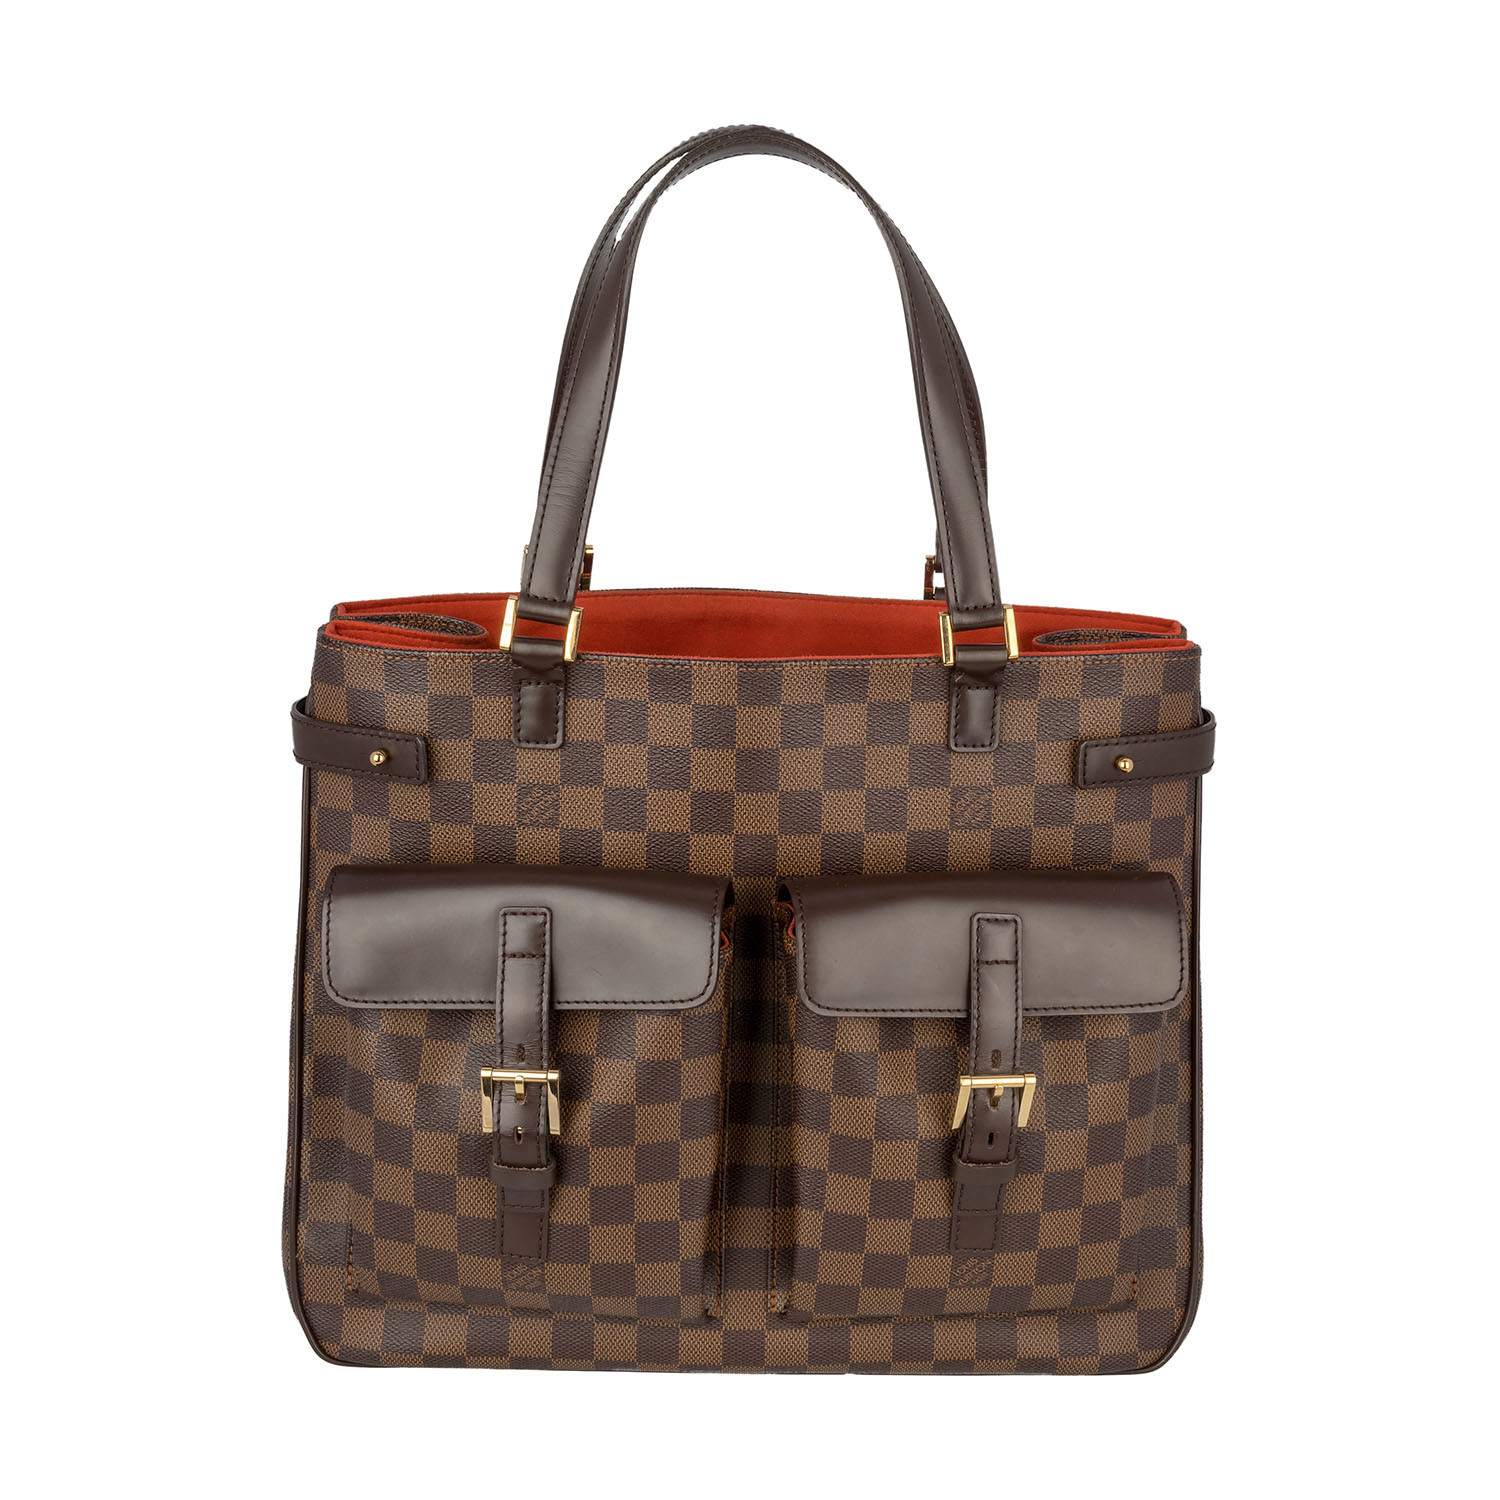 Louis Vuitton // Damier Canvas Uzes Tote Bag // Brown // Pre-Owned - Hermes, Louis Vuitton ...